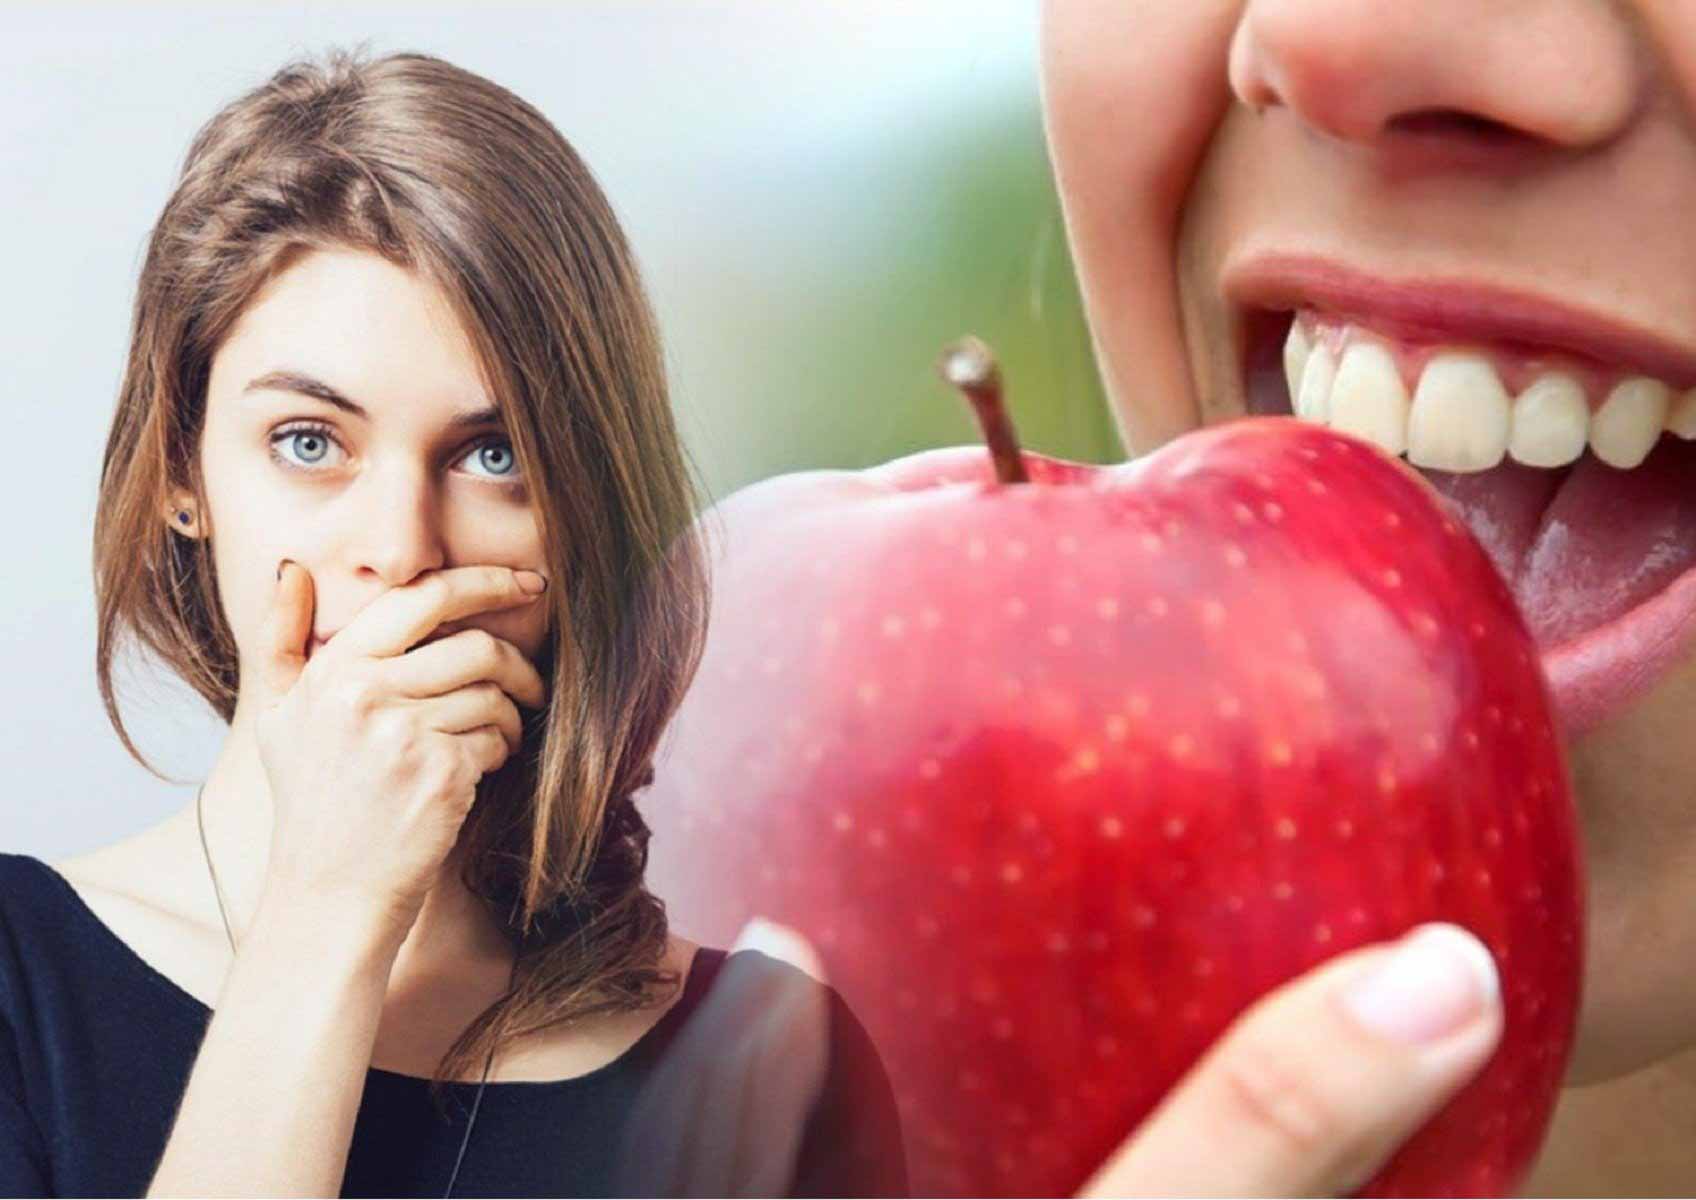 Яблоки вызывают разрушение зубов? Стоматолог развеял миф о фруктовых выгодах